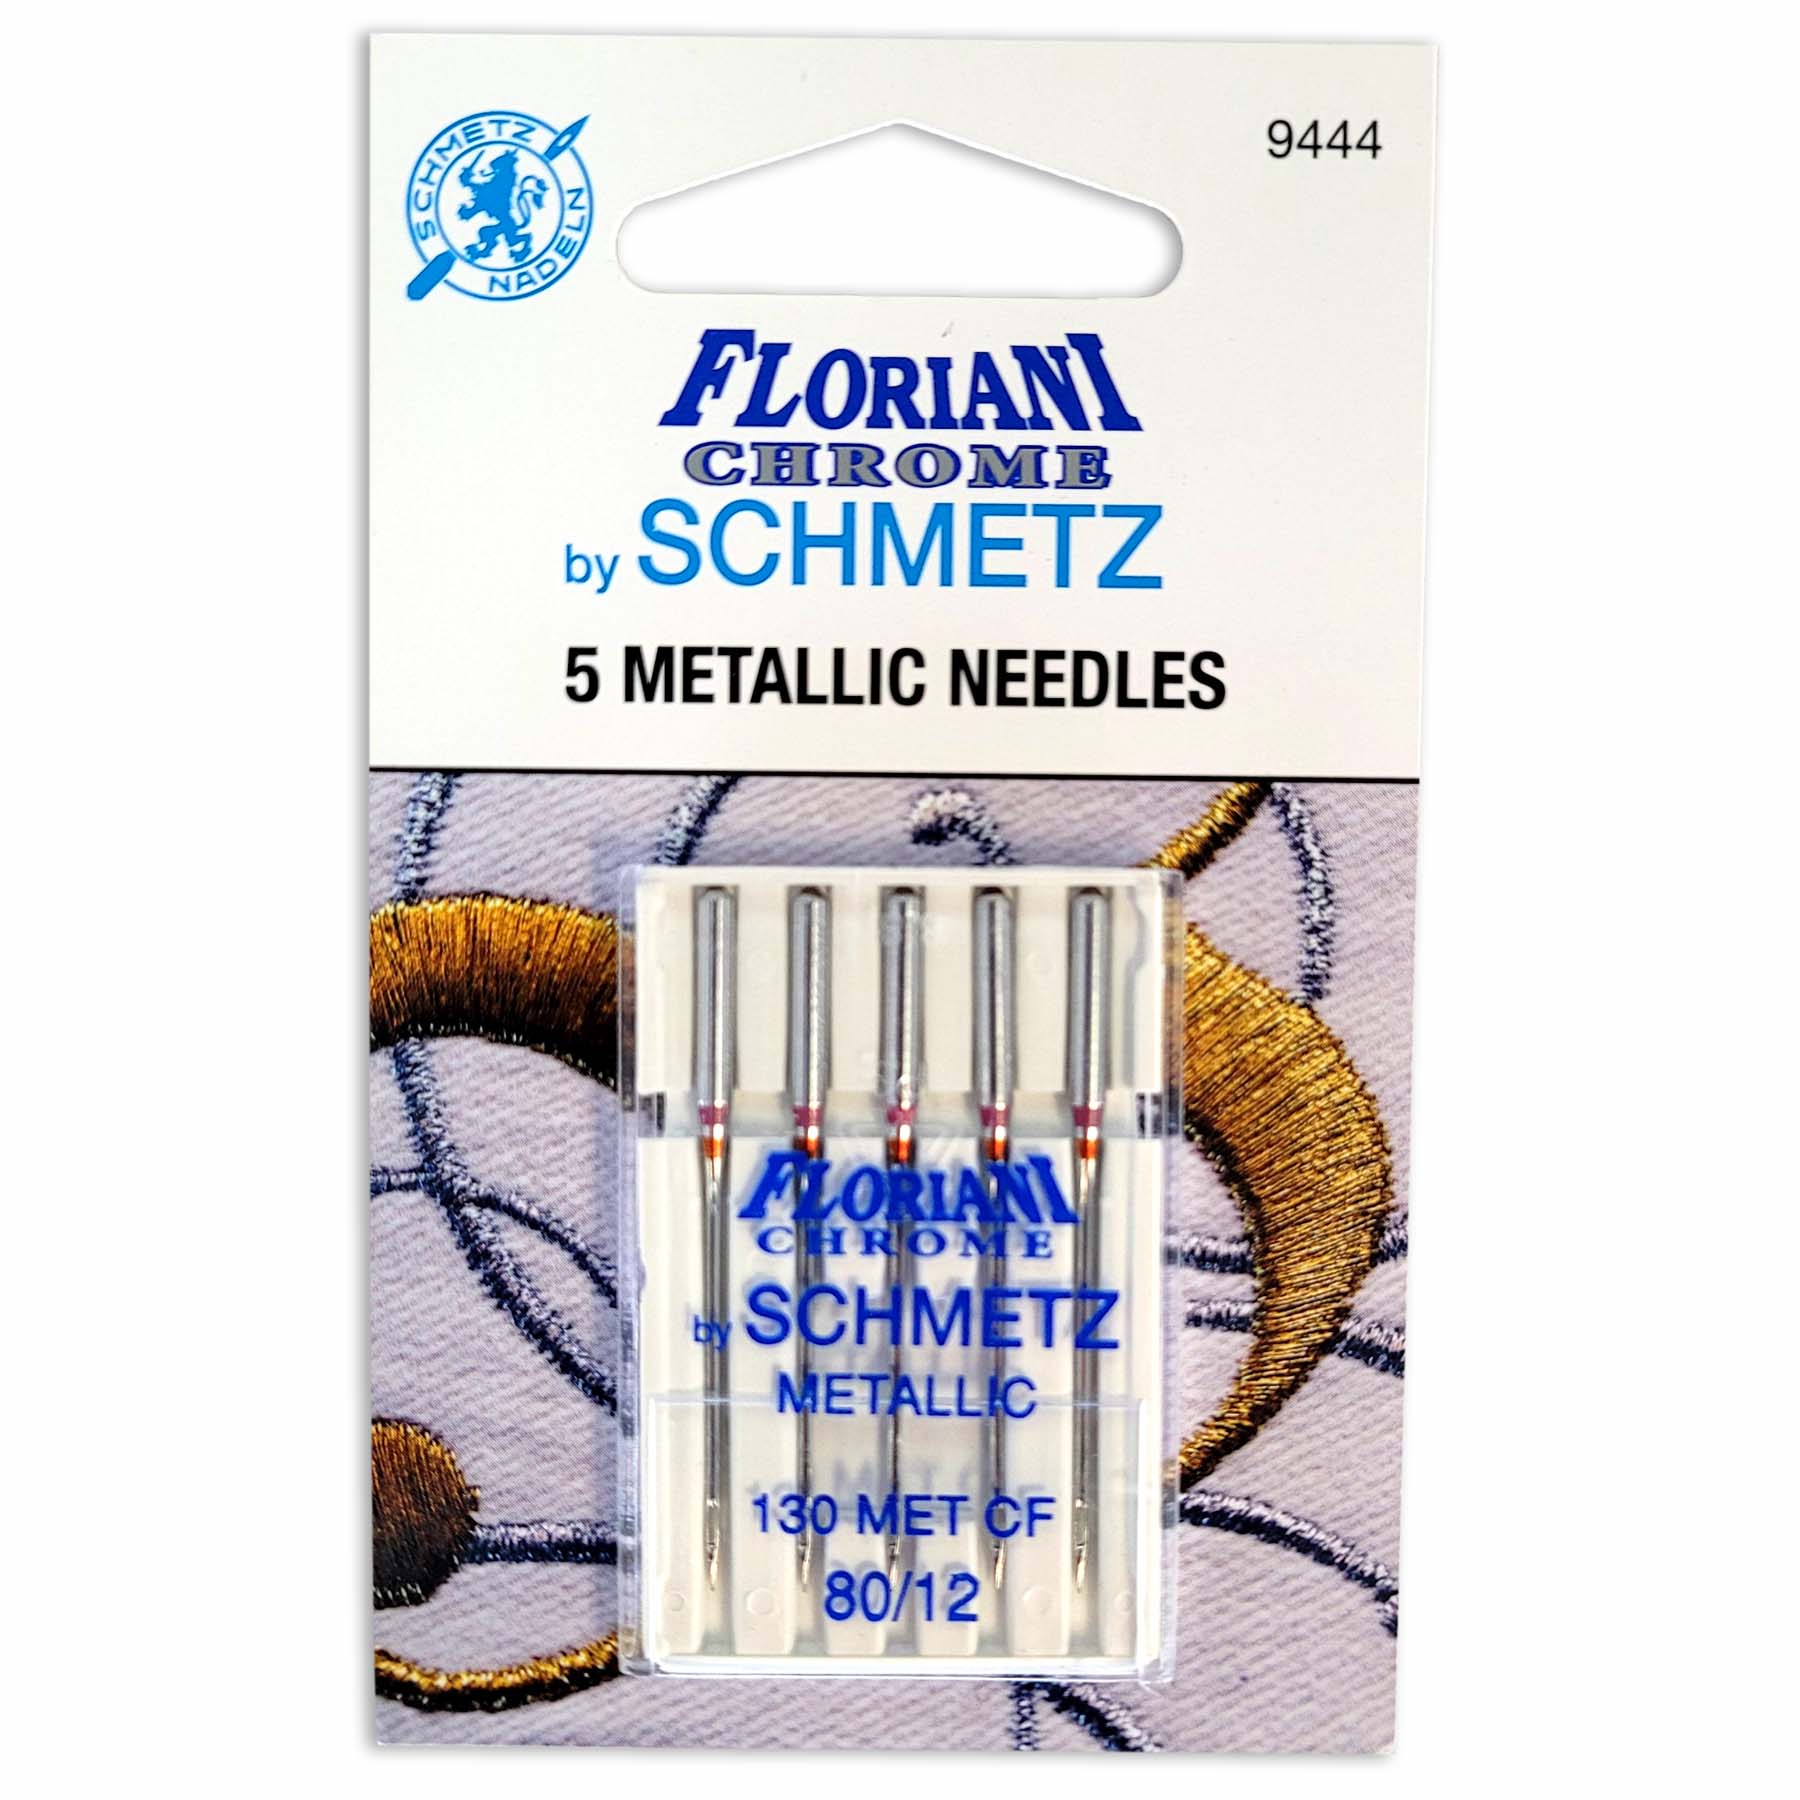 Needles, Metallic - Floriani Chrome by Schmetz 5ct